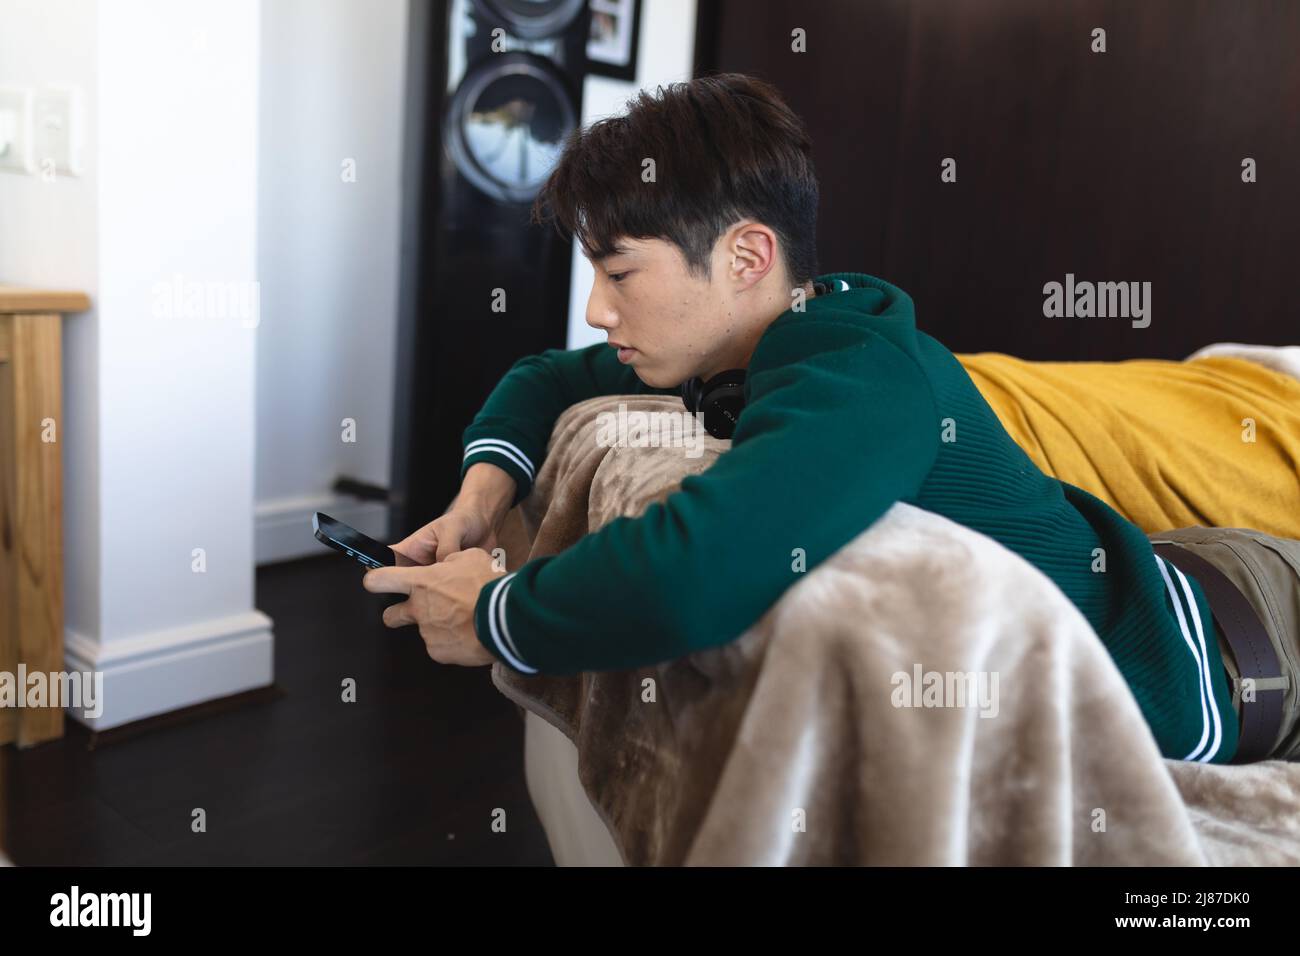 Vue latérale d'un adolescent d'asie à l'aide d'un smartphone tout en étant allongé sur le canapé dans le salon Banque D'Images